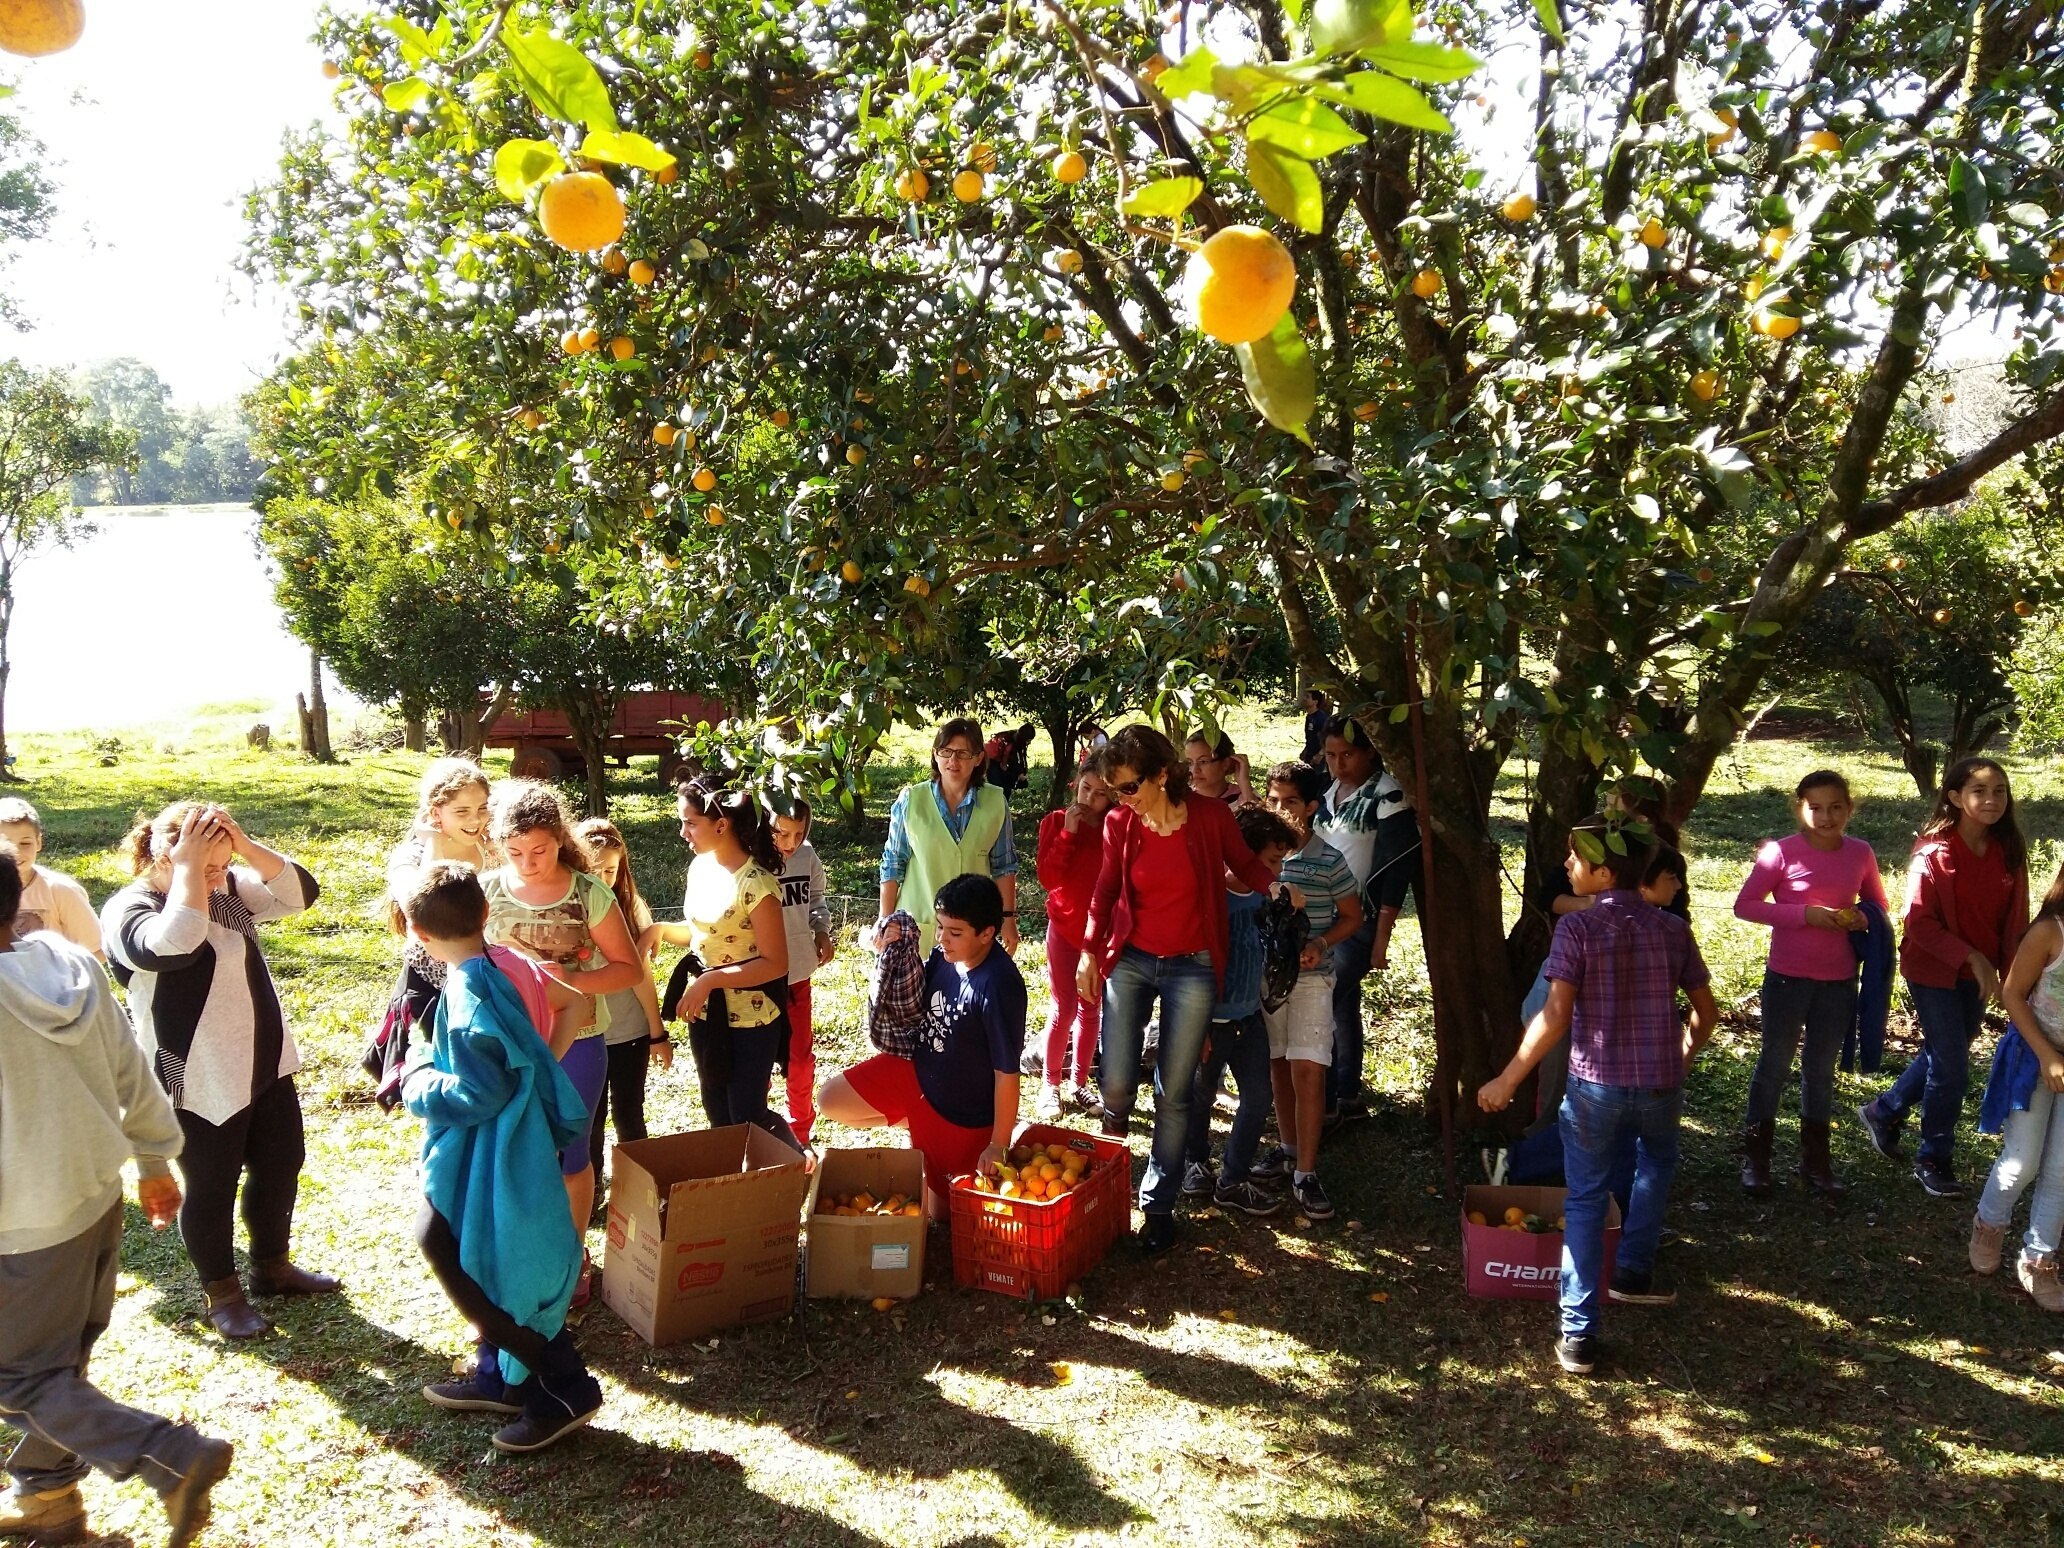 You are currently viewing Alunos visitam propriedade rural em estudo da Alimentação Escolar